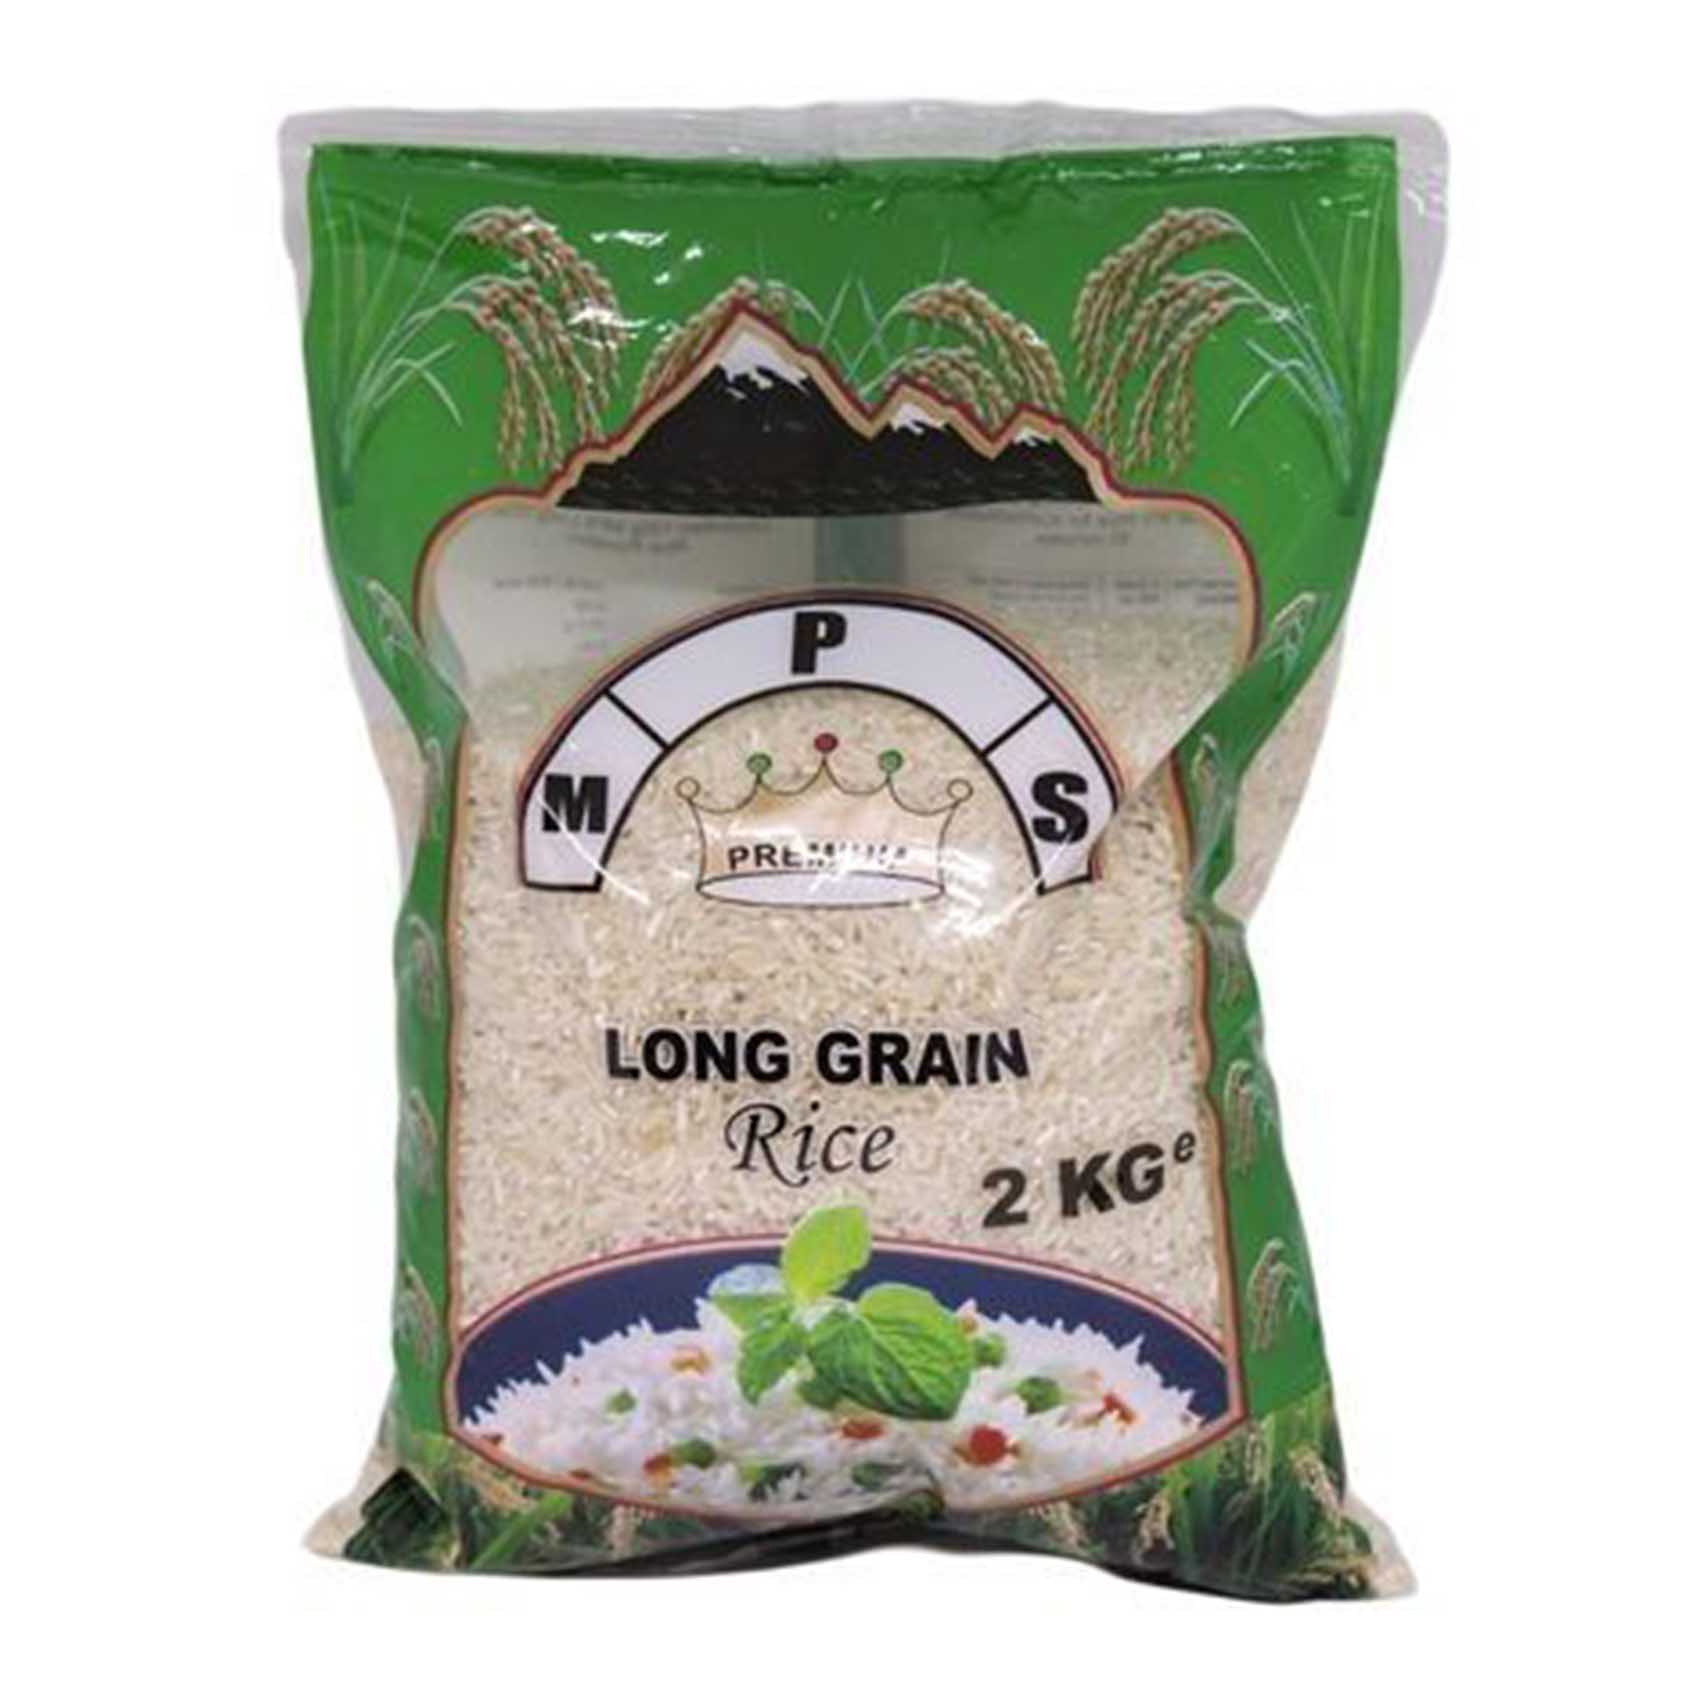 Kings M. P. S Premium Long Grain Rice 2kg